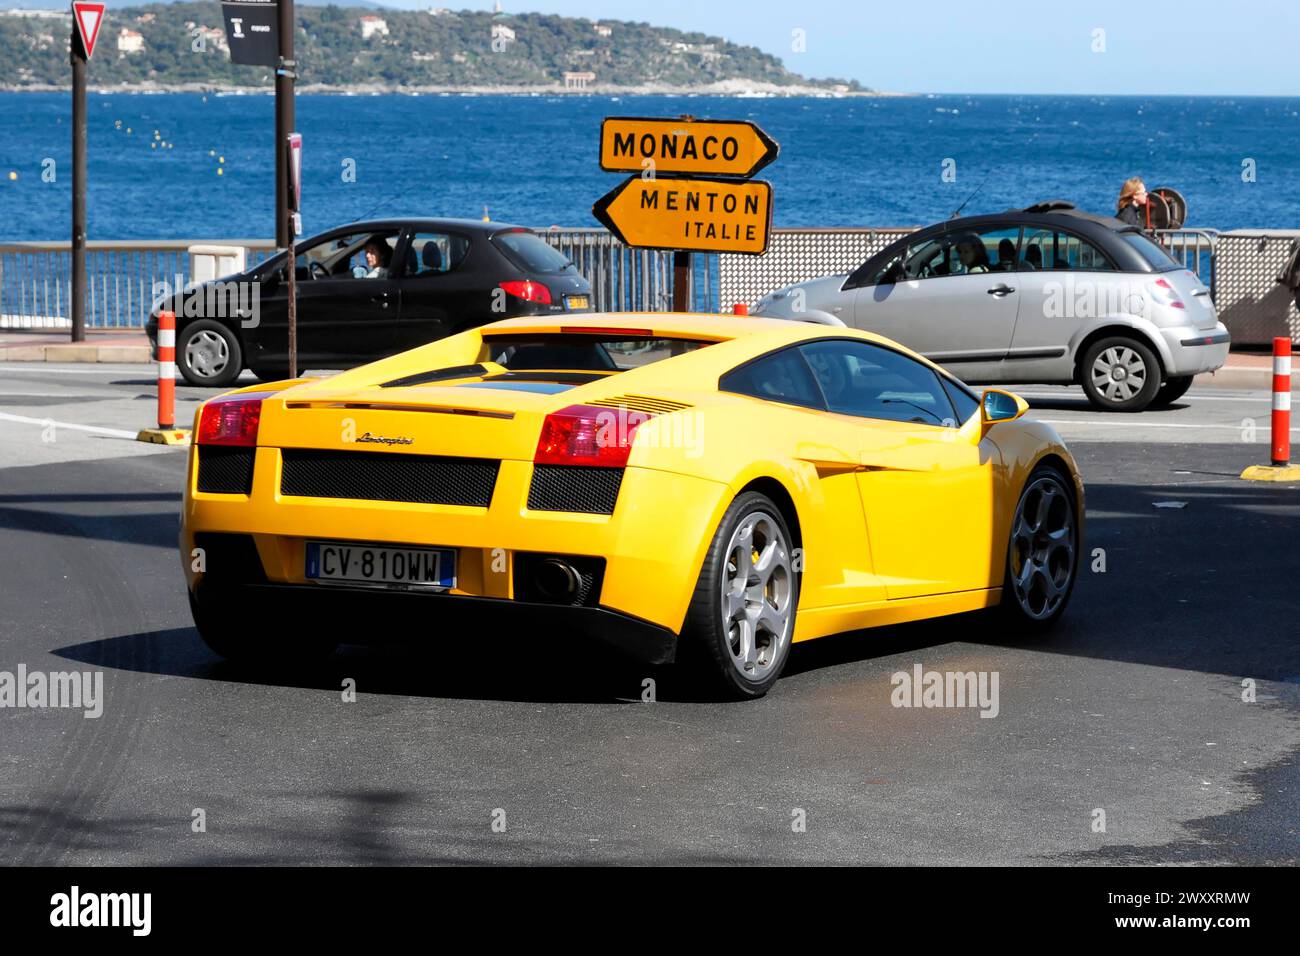 Ein gelber Lamborghini fährt auf einer Straße in Monaco in der Nähe des Meeres, Monte Carlo, Fürstentum Monaco, Monaco, Cote d'Azur Stockfoto